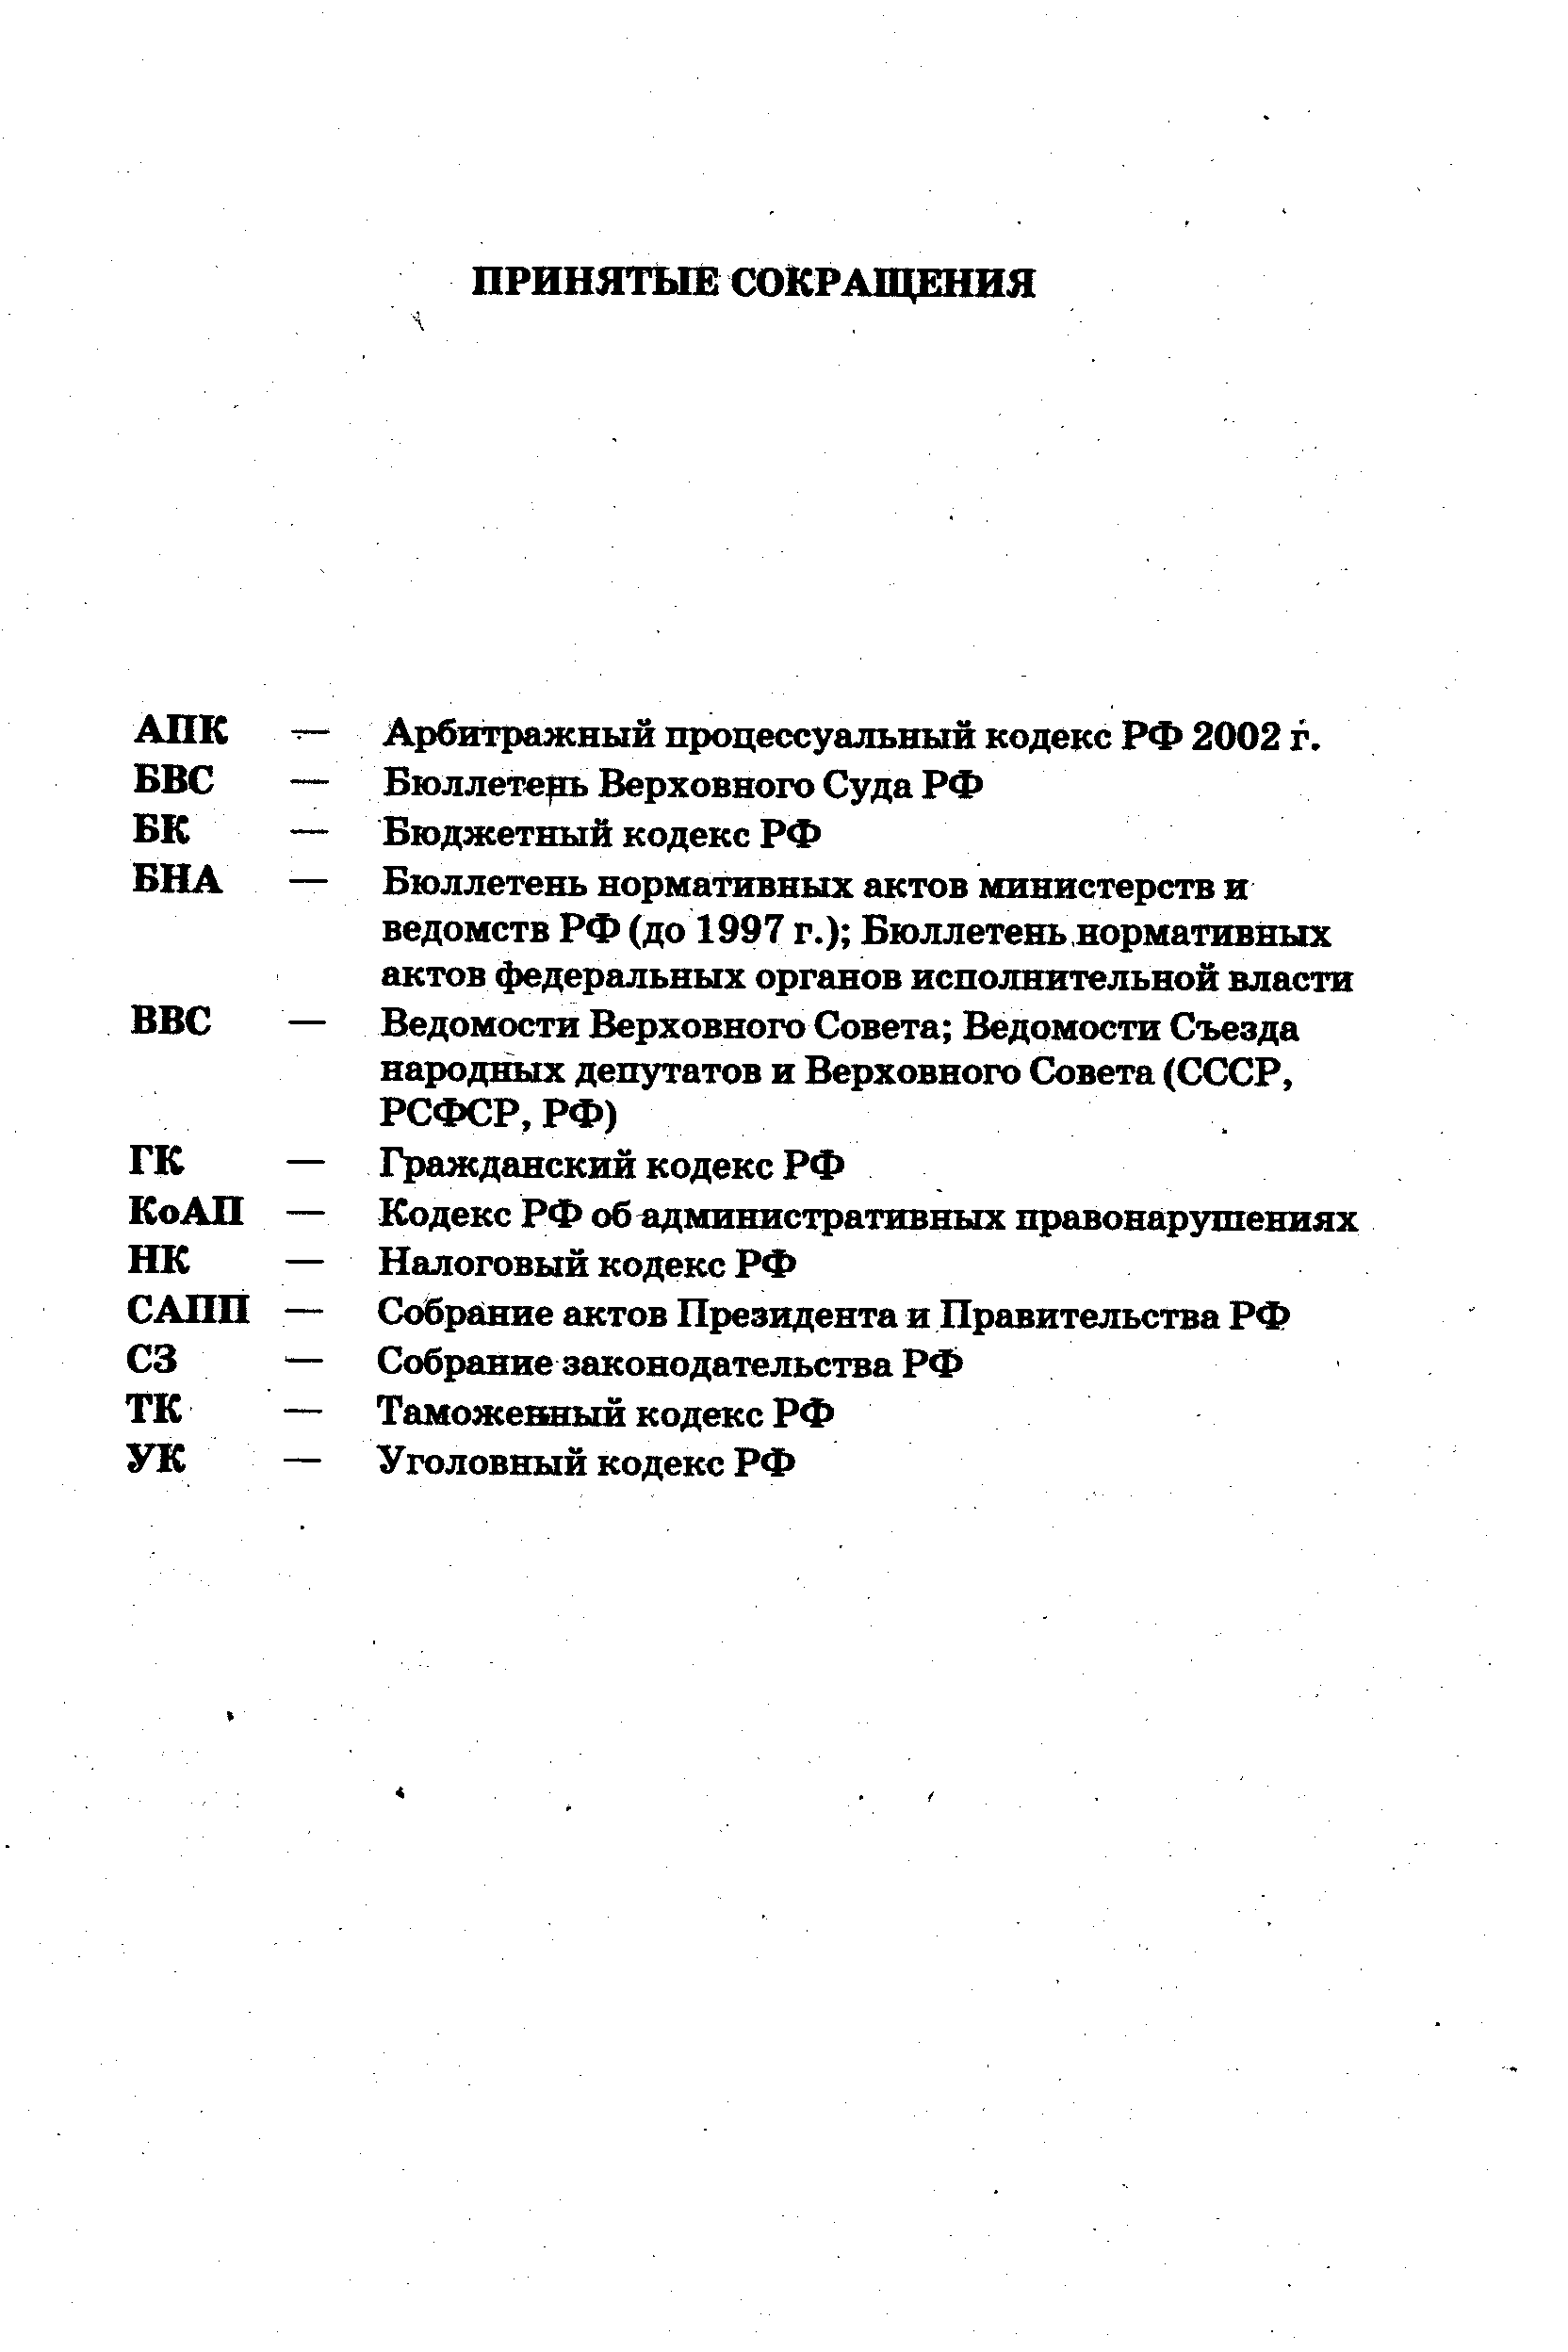 АПК — Арбитражный процессуальный кодекс РФ 2002 г.
